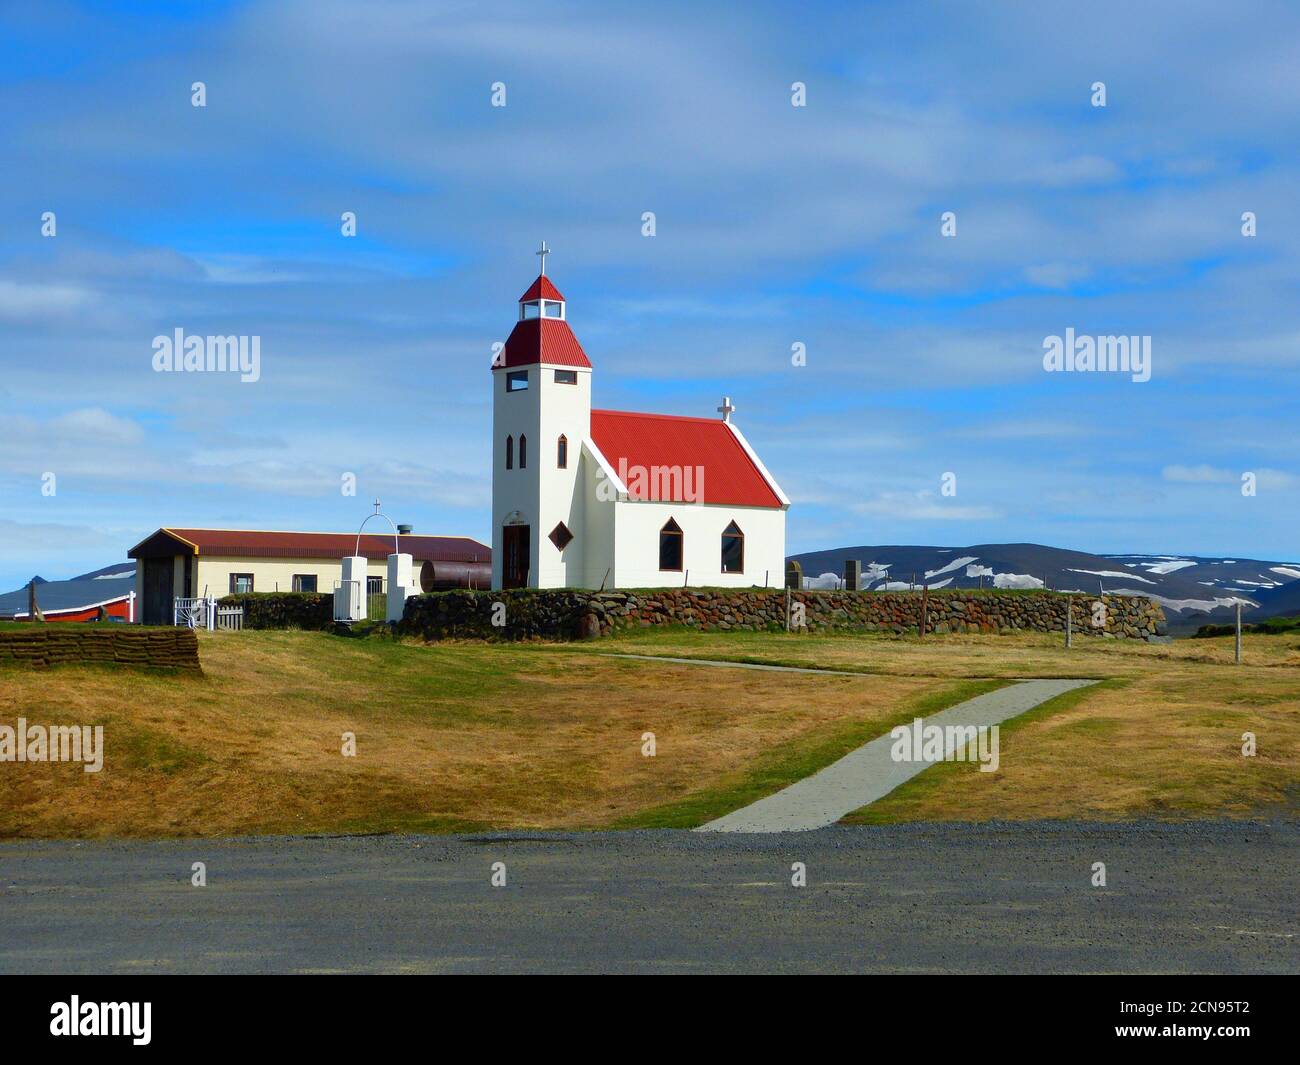 Paysage idyllique islandais paisible. Vue sur la belle église chrétienne rurale. Modrudalur est un village situé dans le désert de l'Islande. Endroit tranquille Banque D'Images